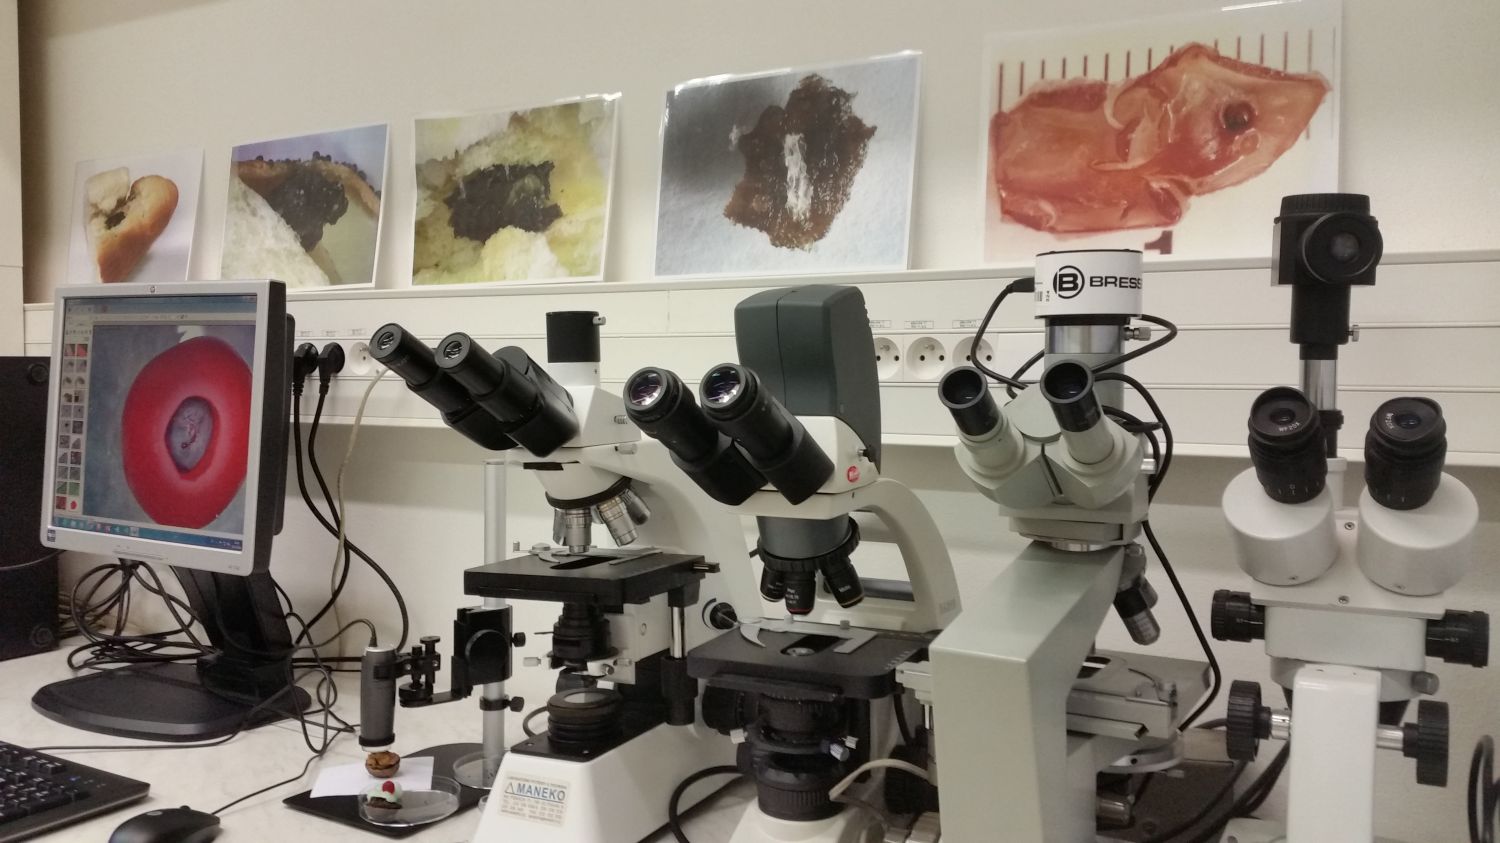 Dostupná mikroskopická technika, včetně digitálních kamer Dino-Lite vhodných pro detekci potravinových defektů.